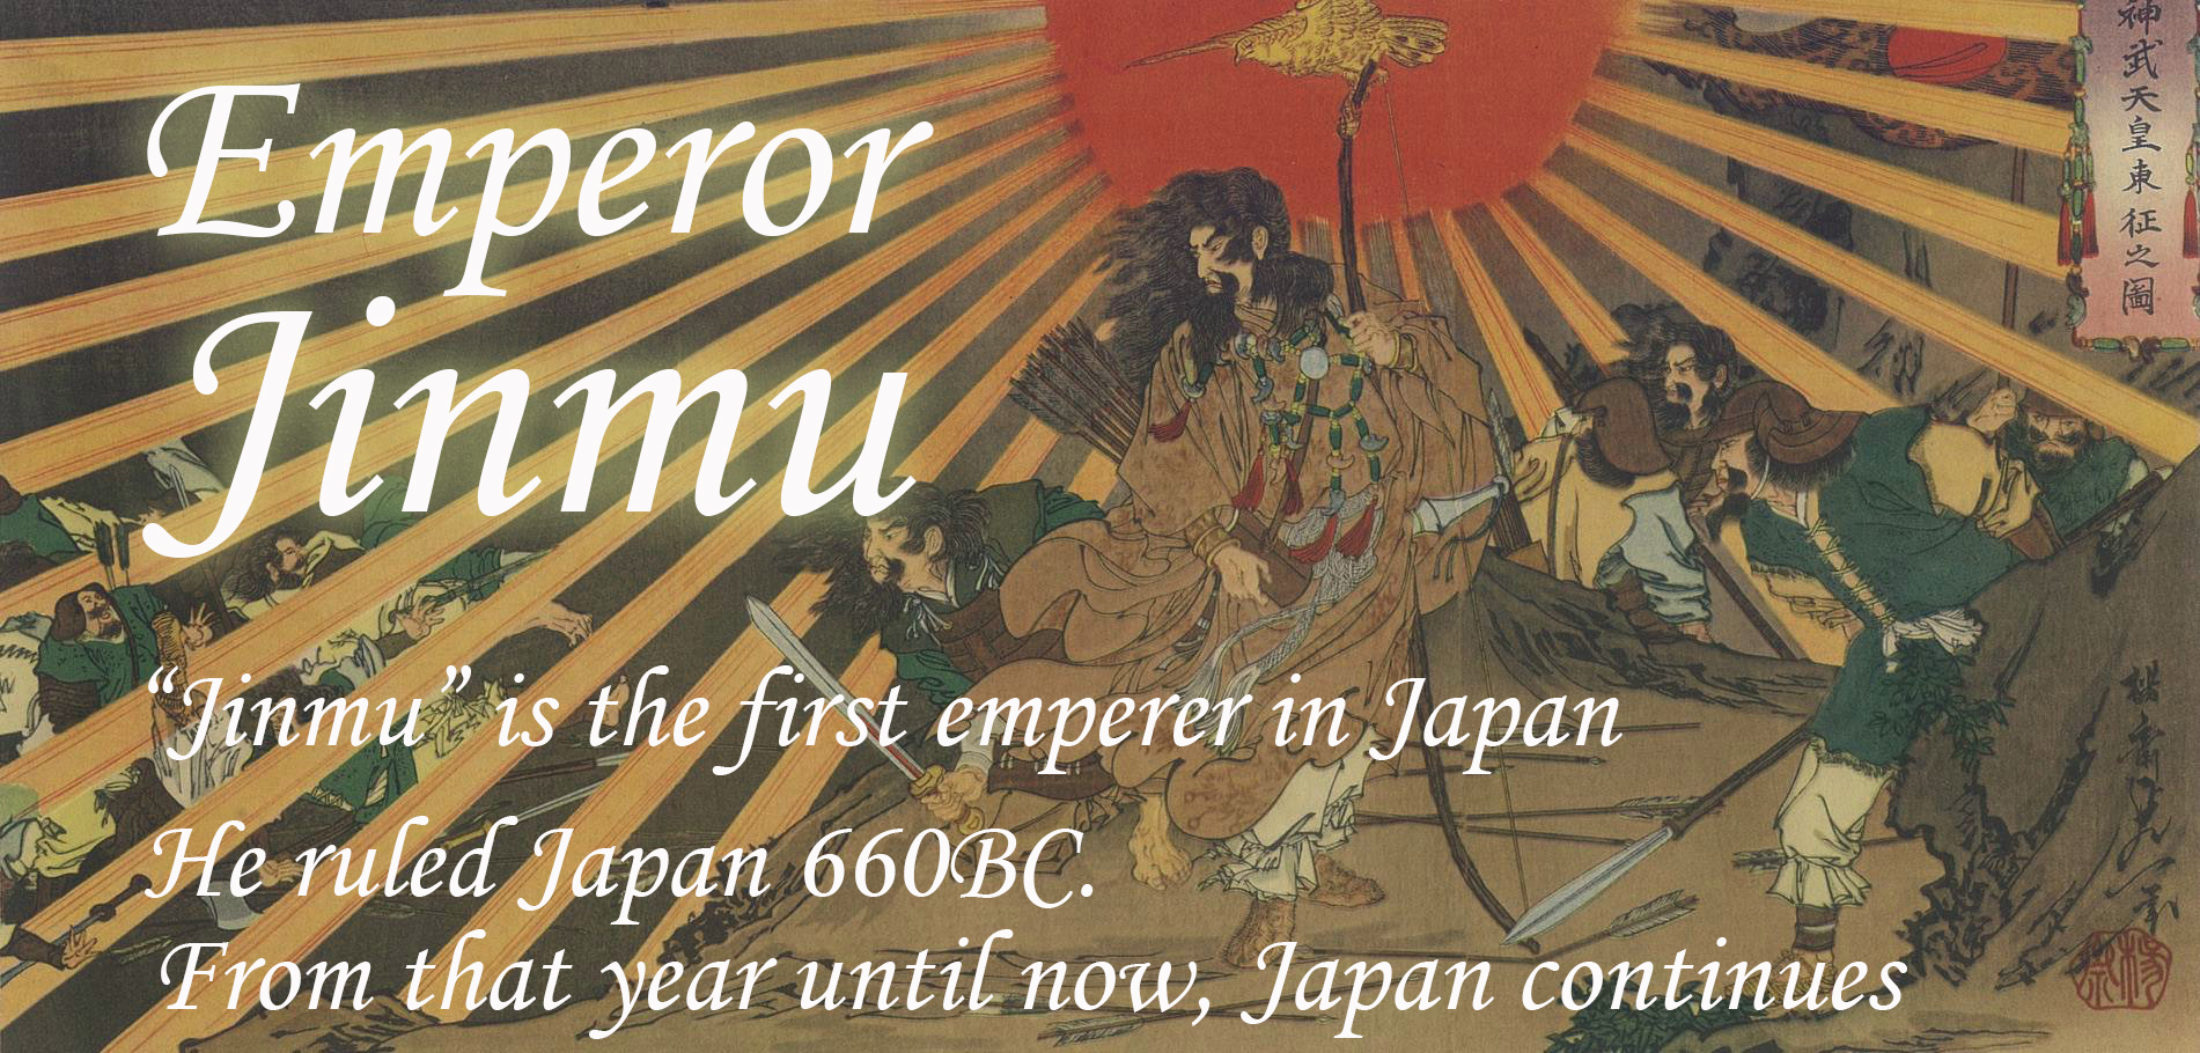 古事記 の日本神話から戦国時代など日本の歴史と漫画やアニメなどサブカルとの関係についての記事がメインのブログ